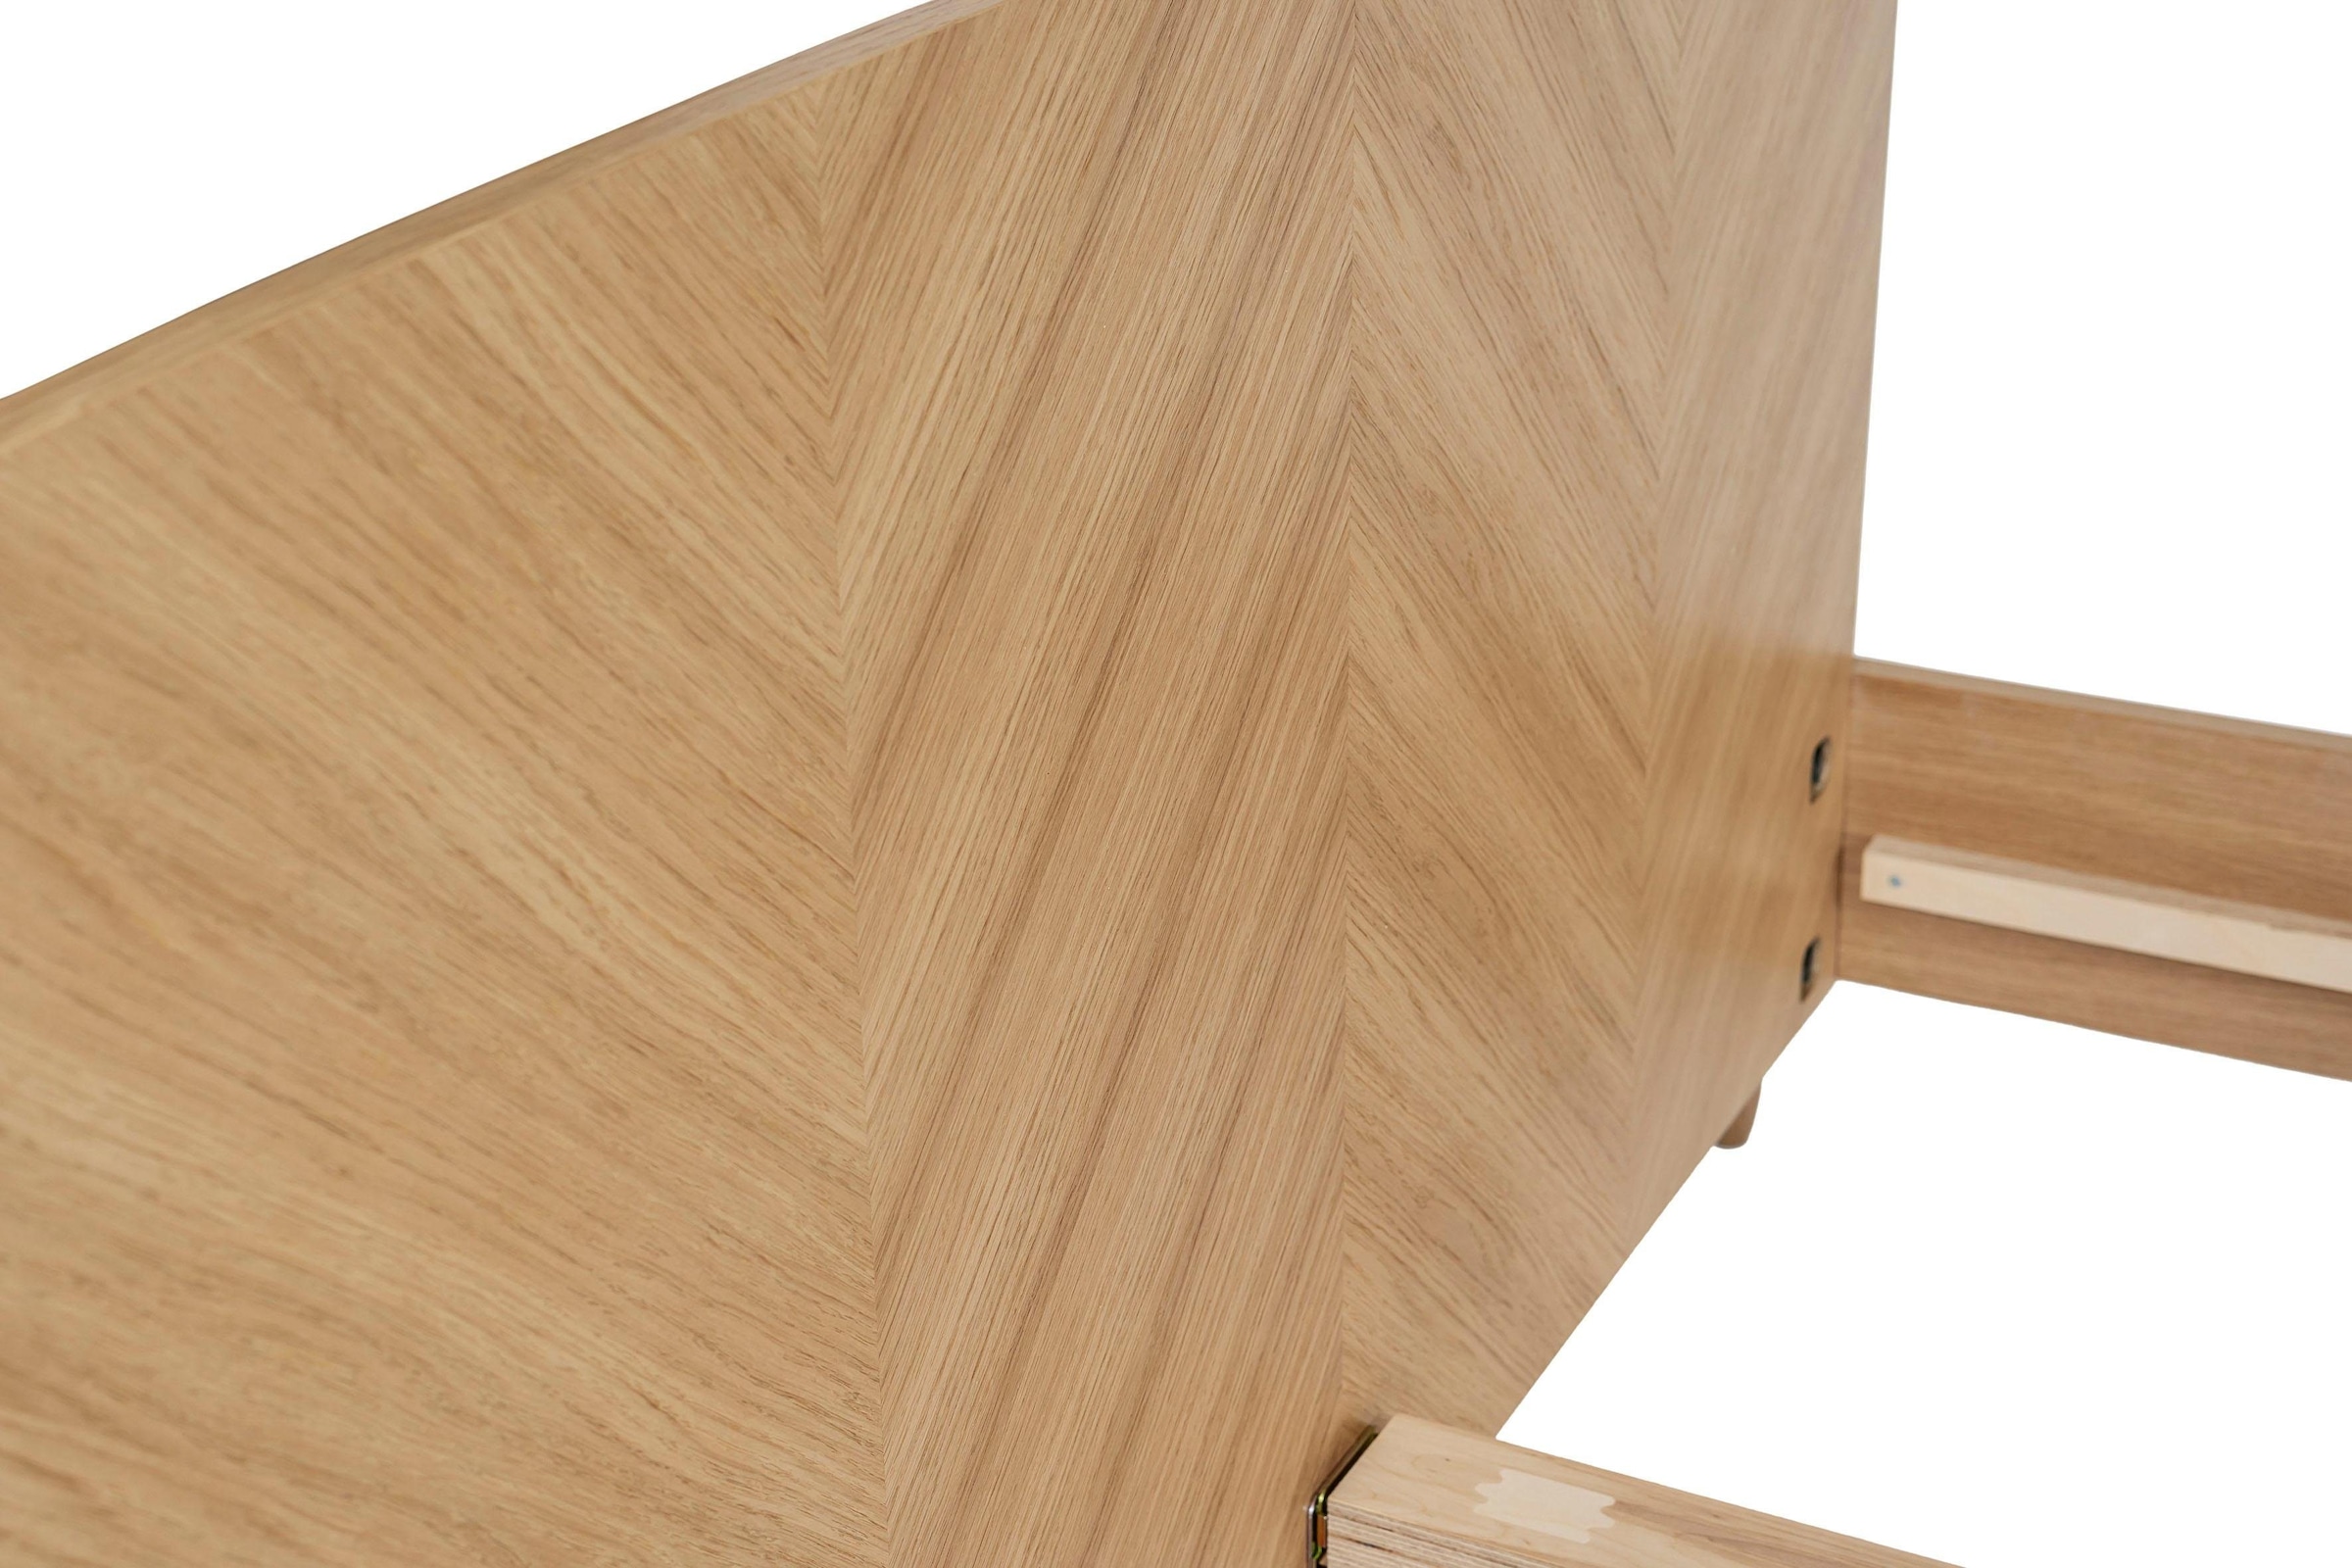 Woodman Massivholzbett »Farsta 1«, im skandinavischen Design, Holzfurnier aus Eiche